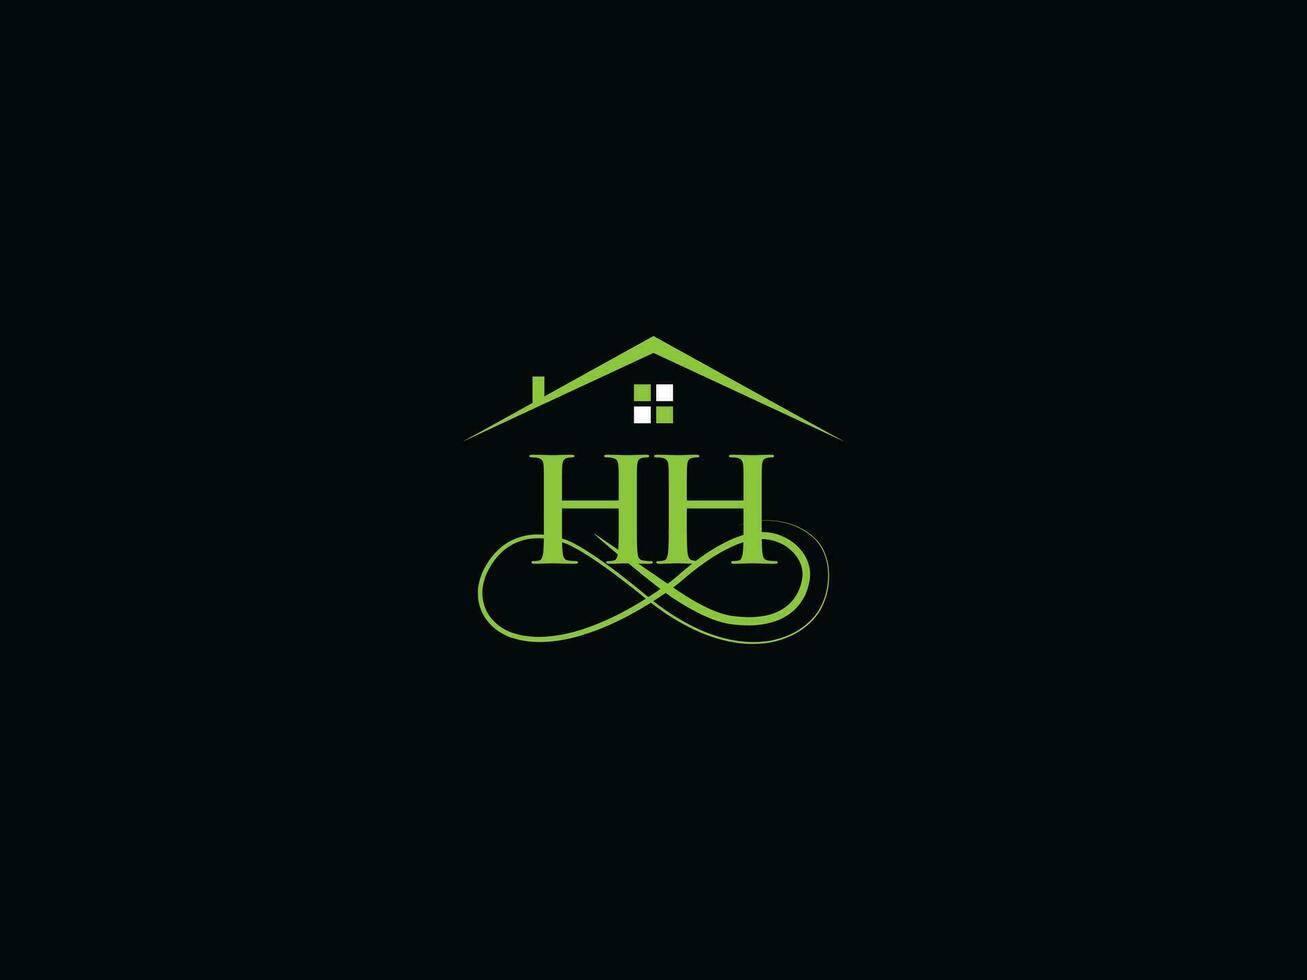 tipografia hh construção logotipo, inicial hh luxo real Estado logotipo para você vetor